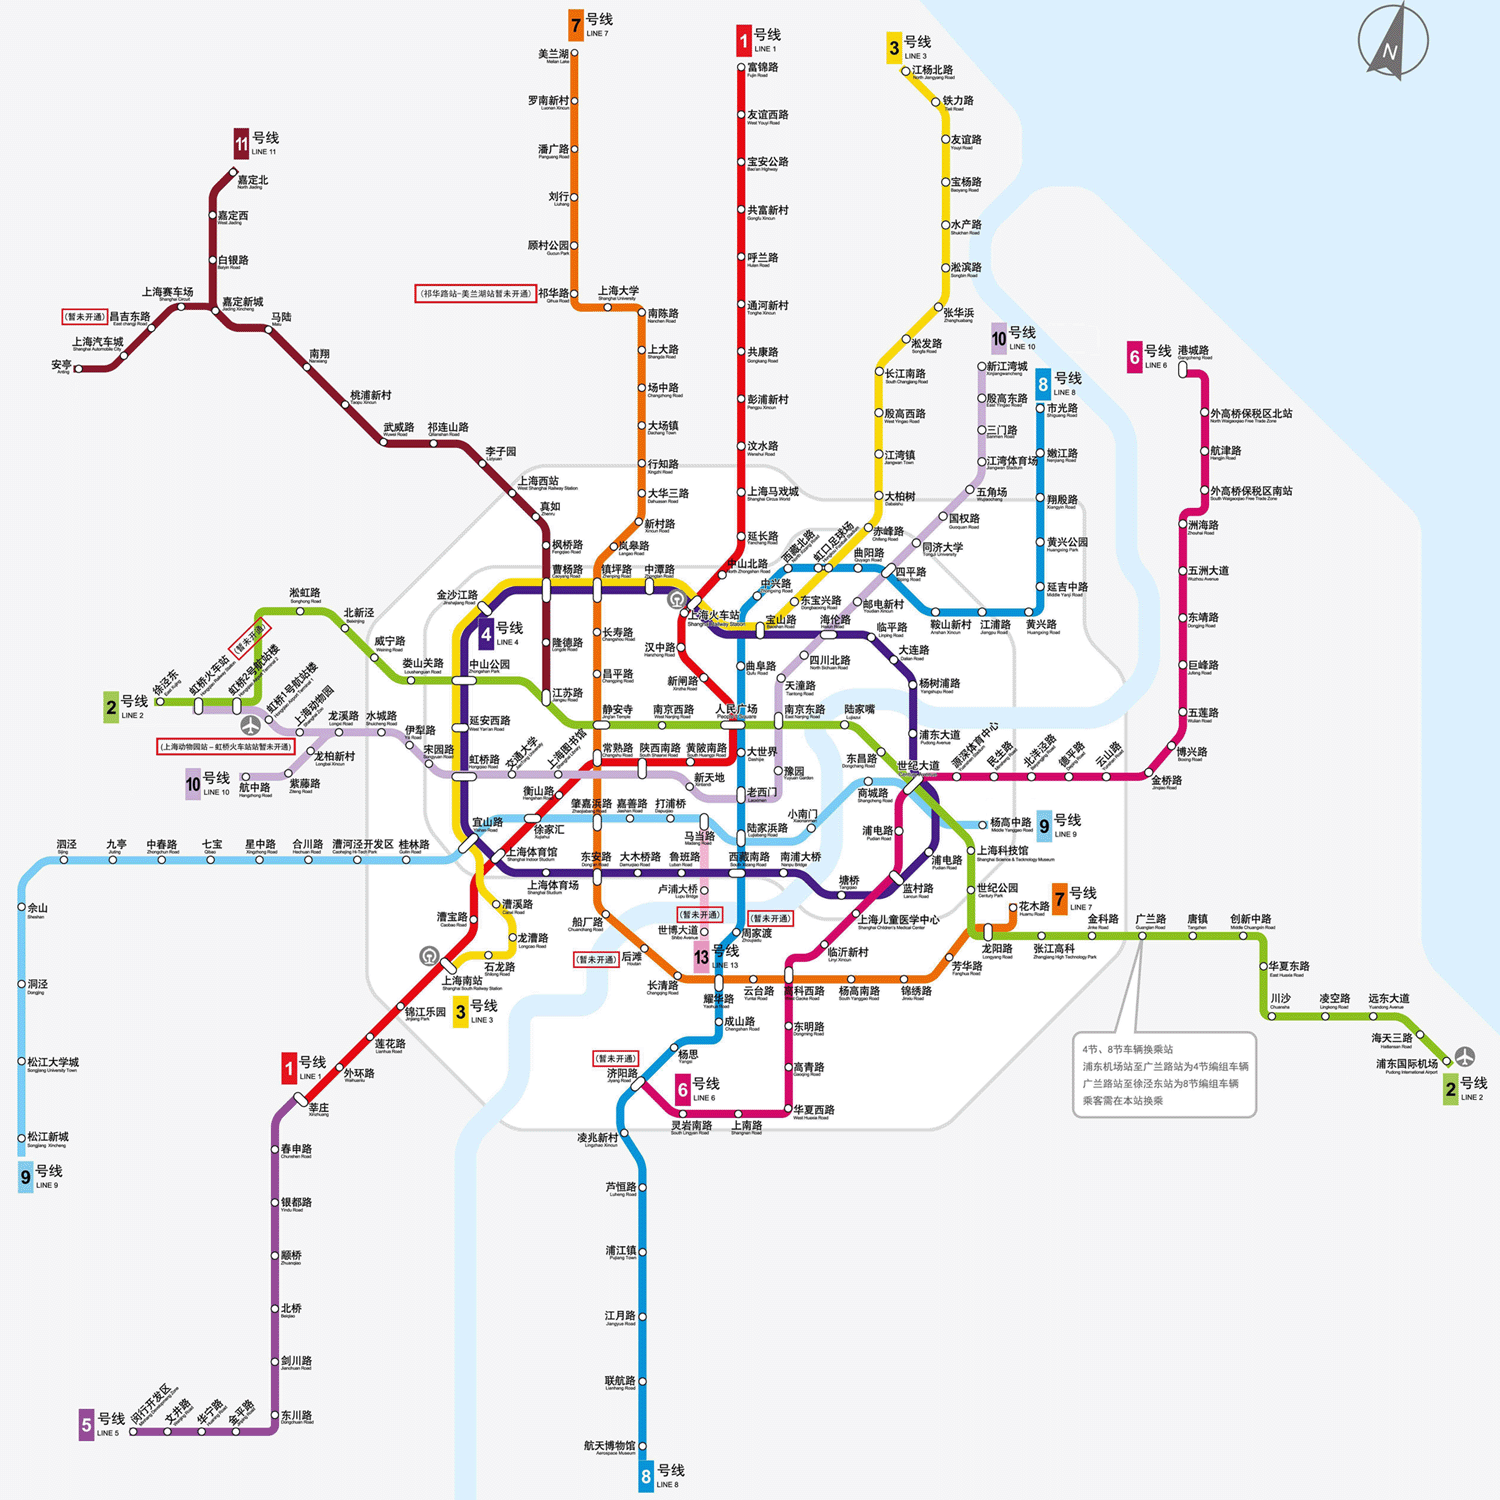 Shanghai Transport -Subway